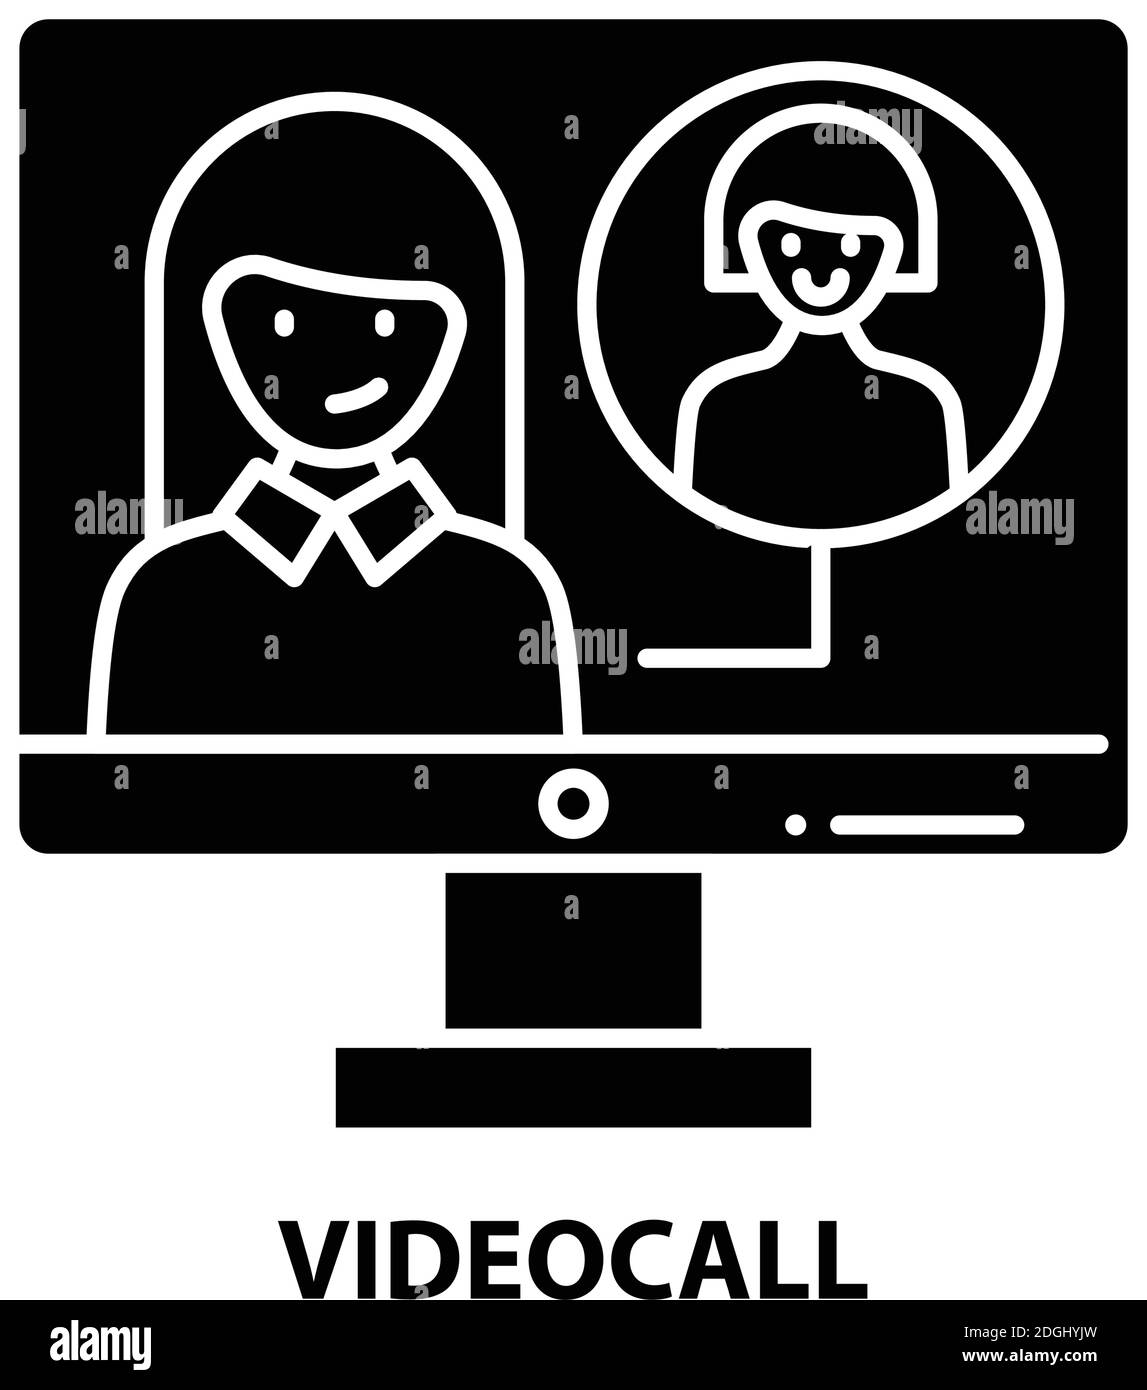 Videocall-Symbol, schwarzes Vektorzeichen mit editierbaren Konturen, Konzeptdarstellung Stock Vektor